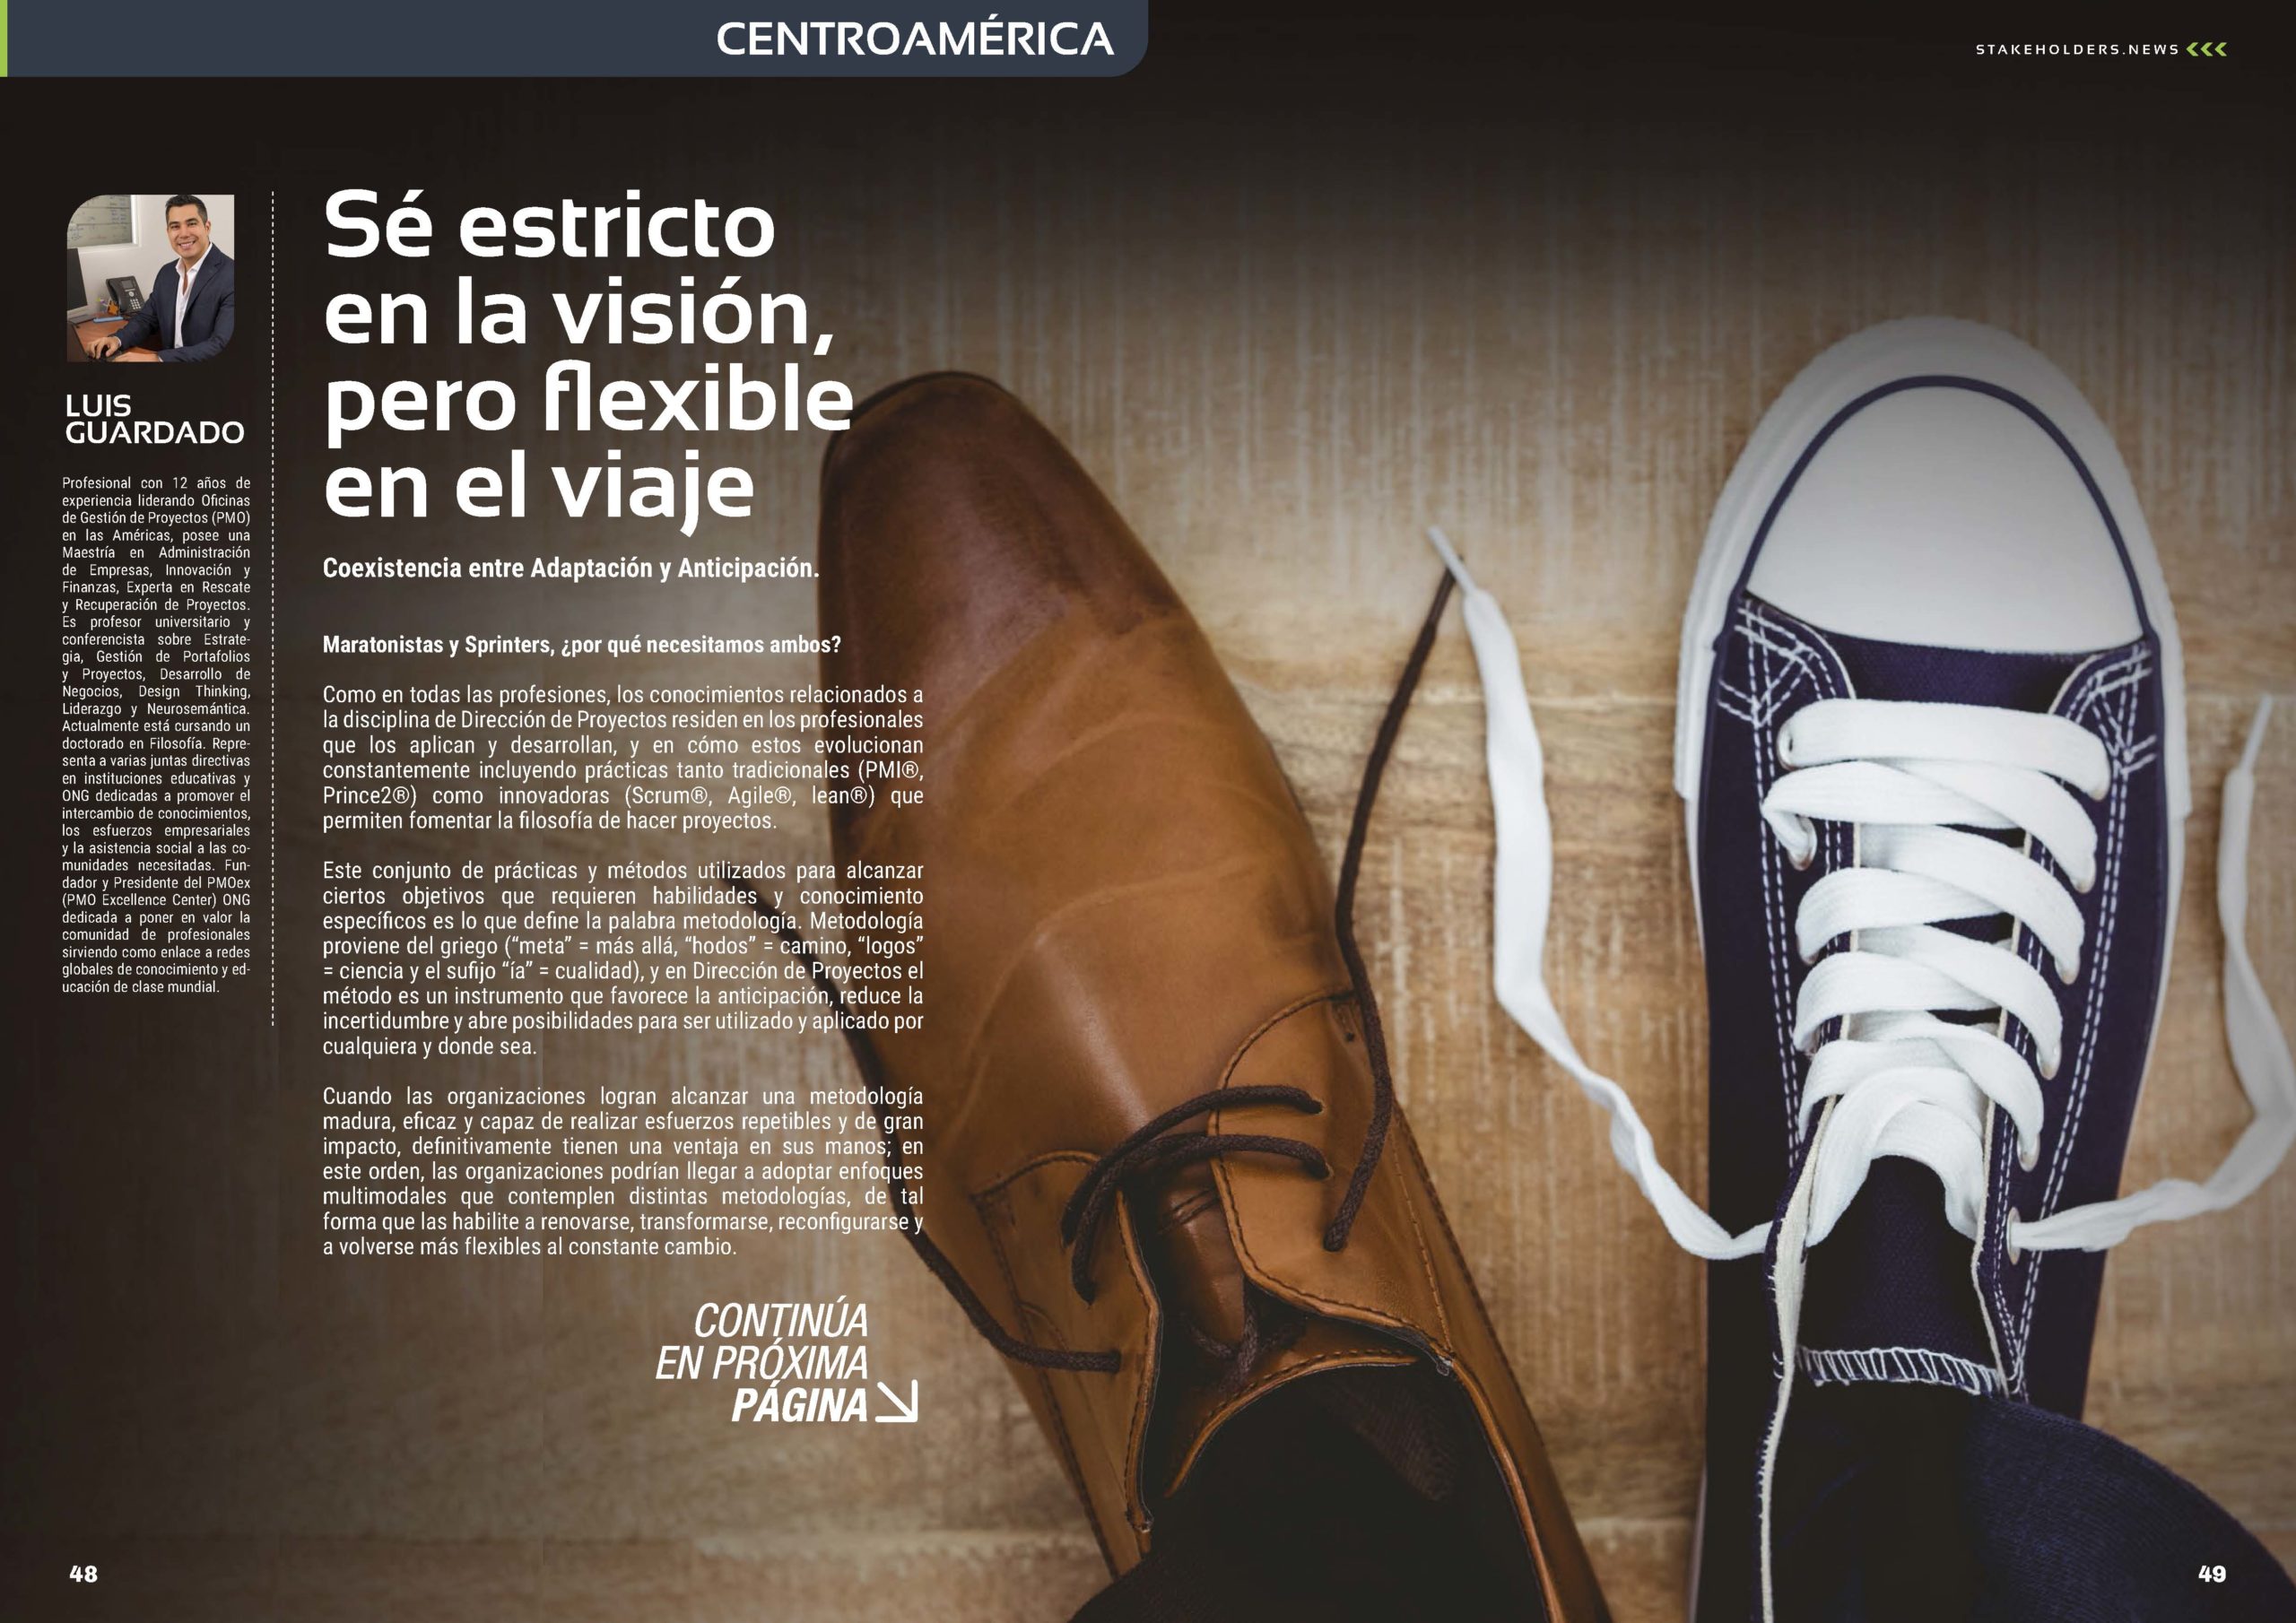 Artículo "Sé estricto en la visión, pero flexible en el viaje" de Luis Guardado en la Sección " Centroamérica" de la Revista Stakeholders.news